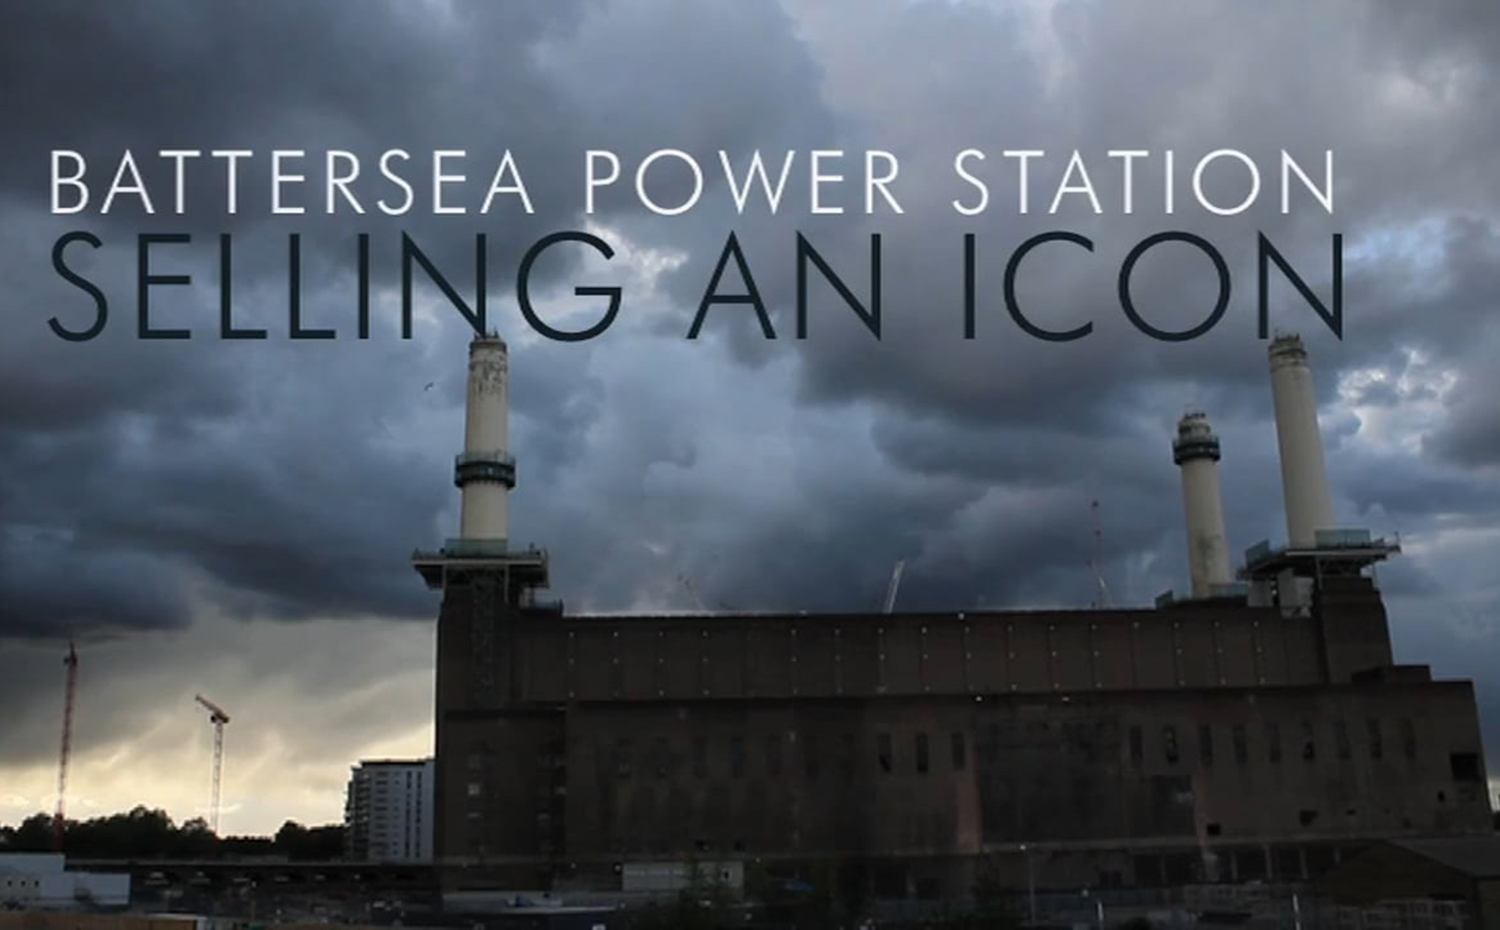 Marc Aureli Santos Battersea Power Station: Selling an Icon ciclo de cortometrajes Arquitectura en Corto